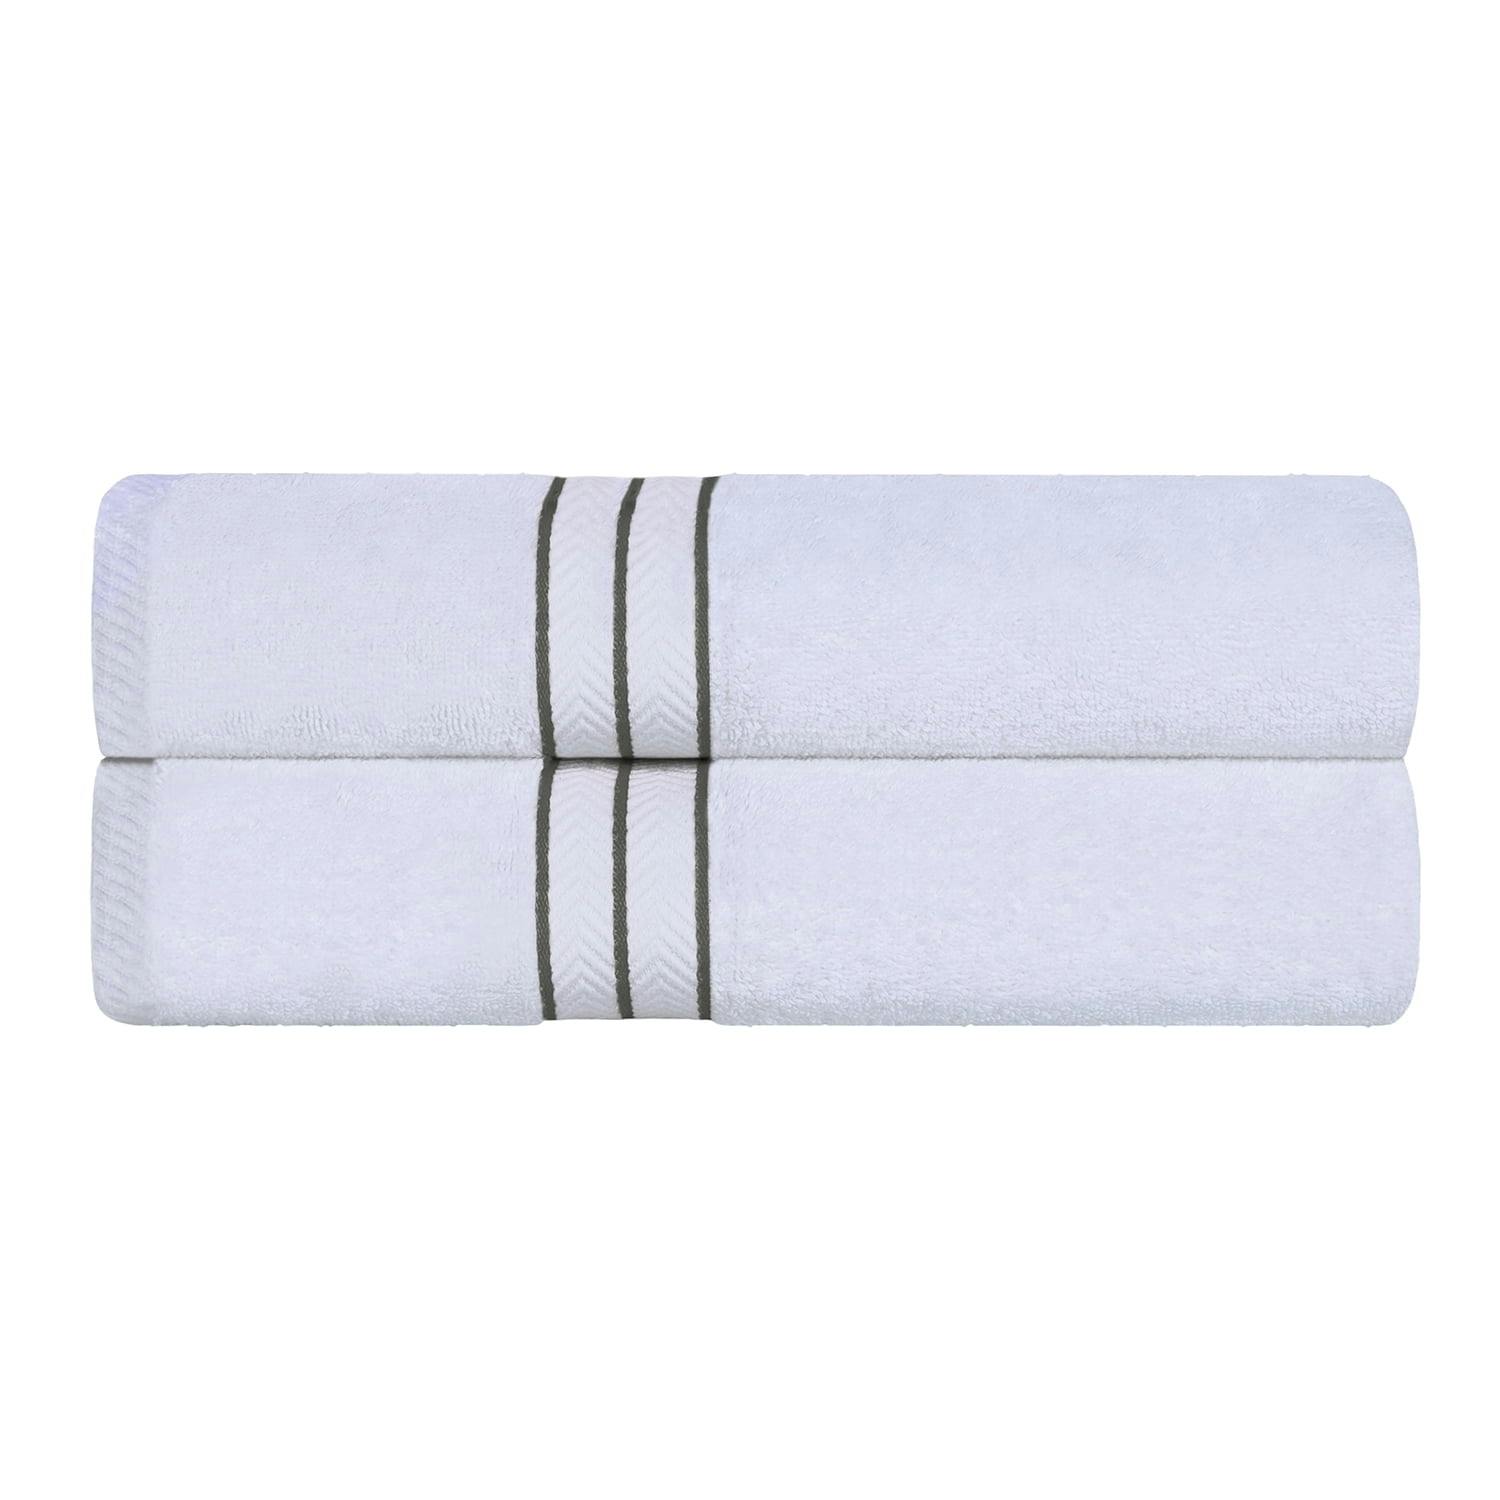 Plush Turkish Cotton 6-Piece Bath Towel Set in Solid Colors